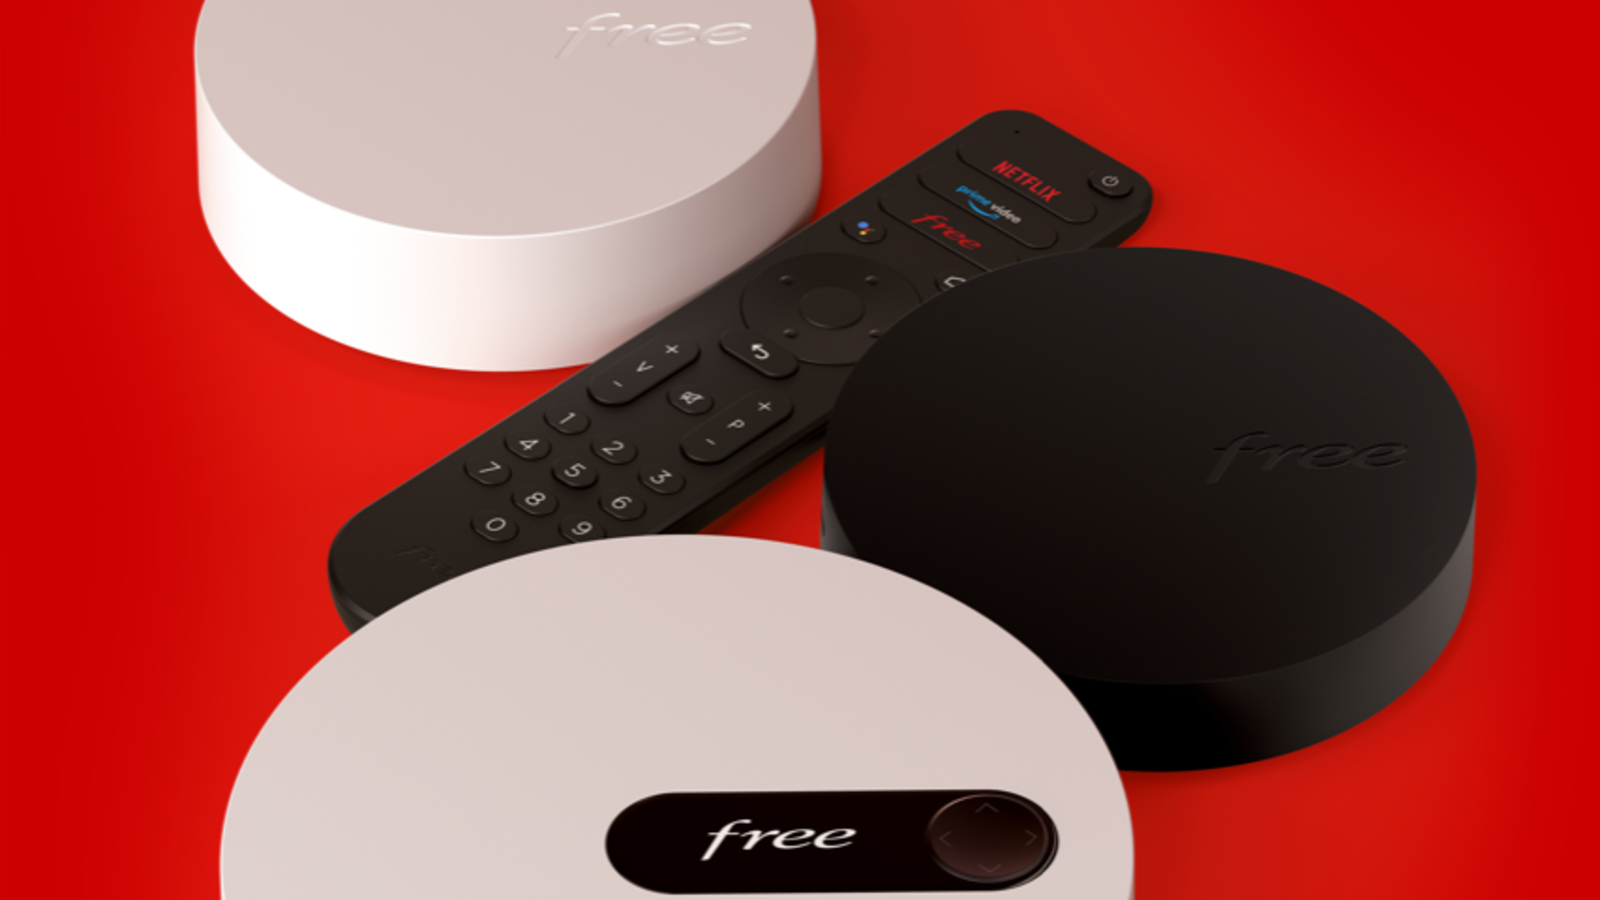 Freebox, une seule télecommande pour la TV et pour la box : le